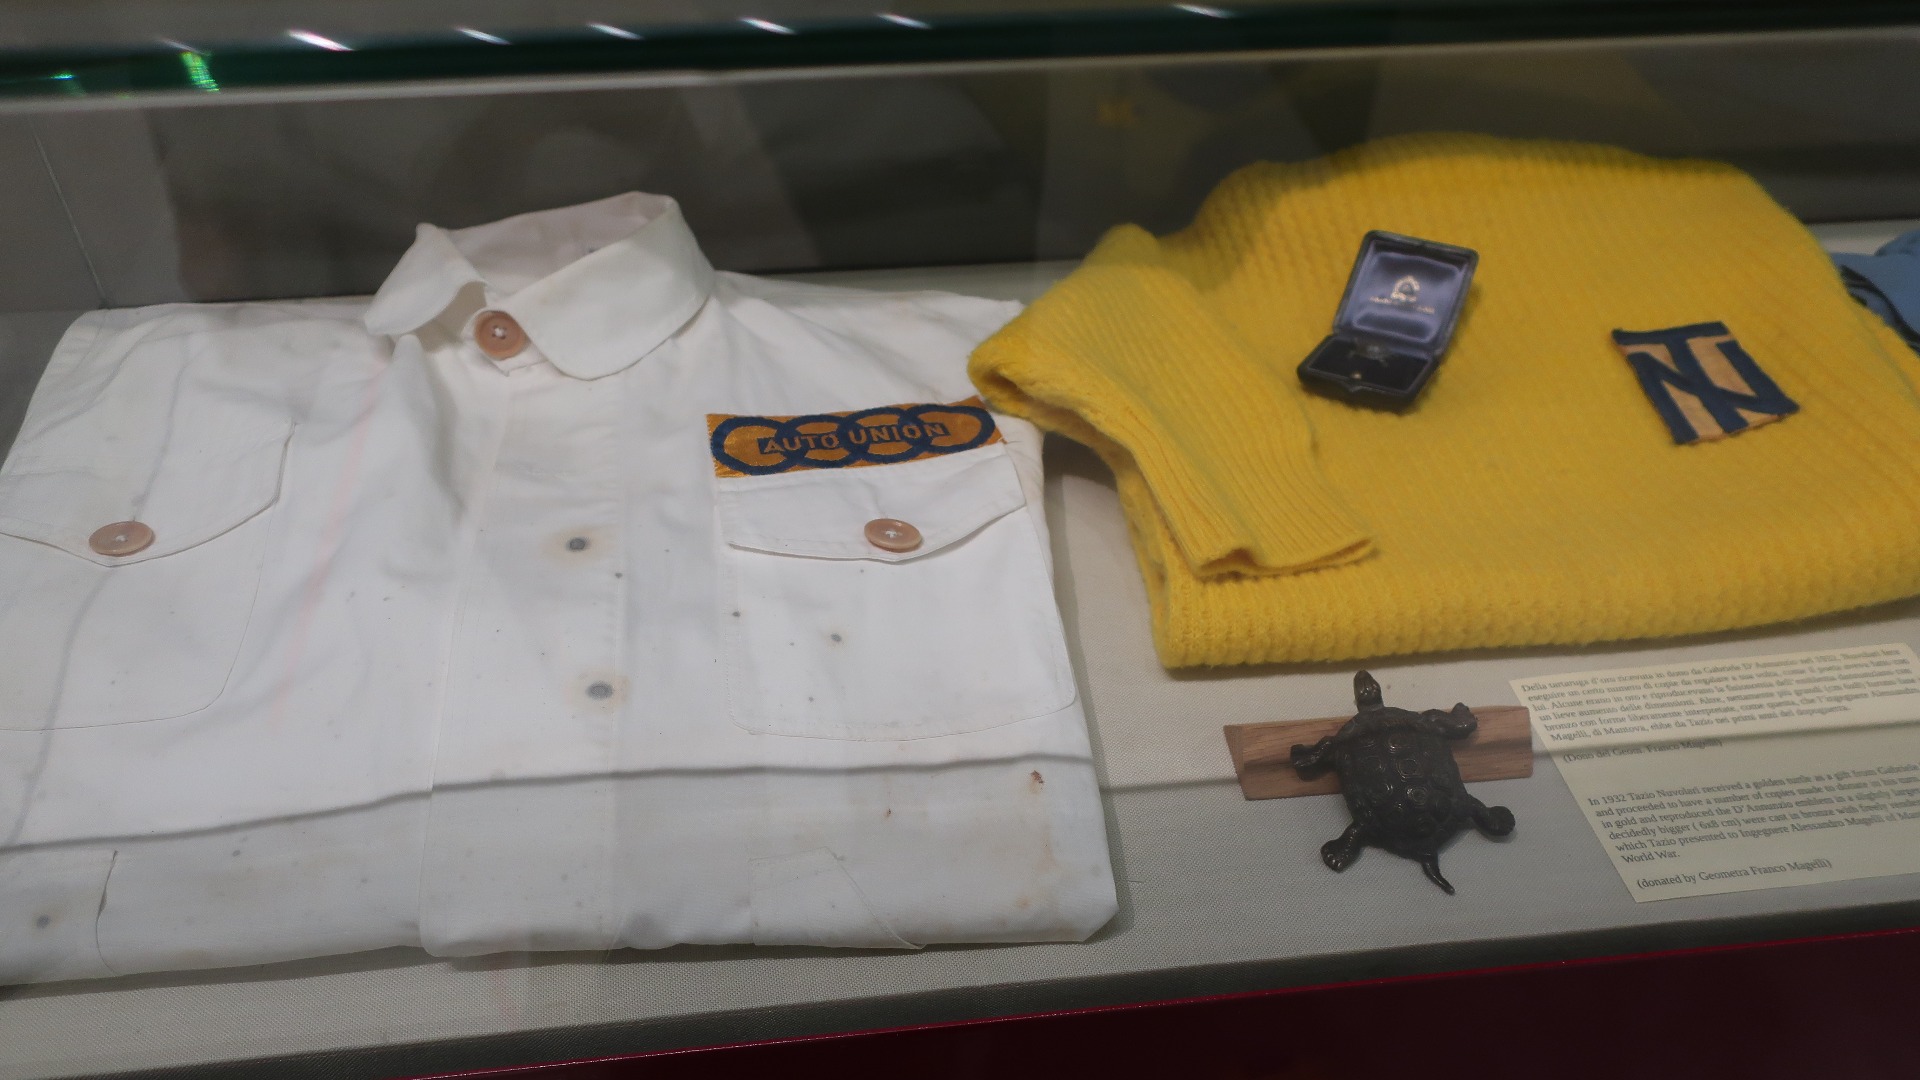 En overall fra Auto Union tiden, og en gul egendesignet skjorte med TN initialene, som Nuvolari designet selv. På løpsdagene foretrakk Tazio den gule skjorten.